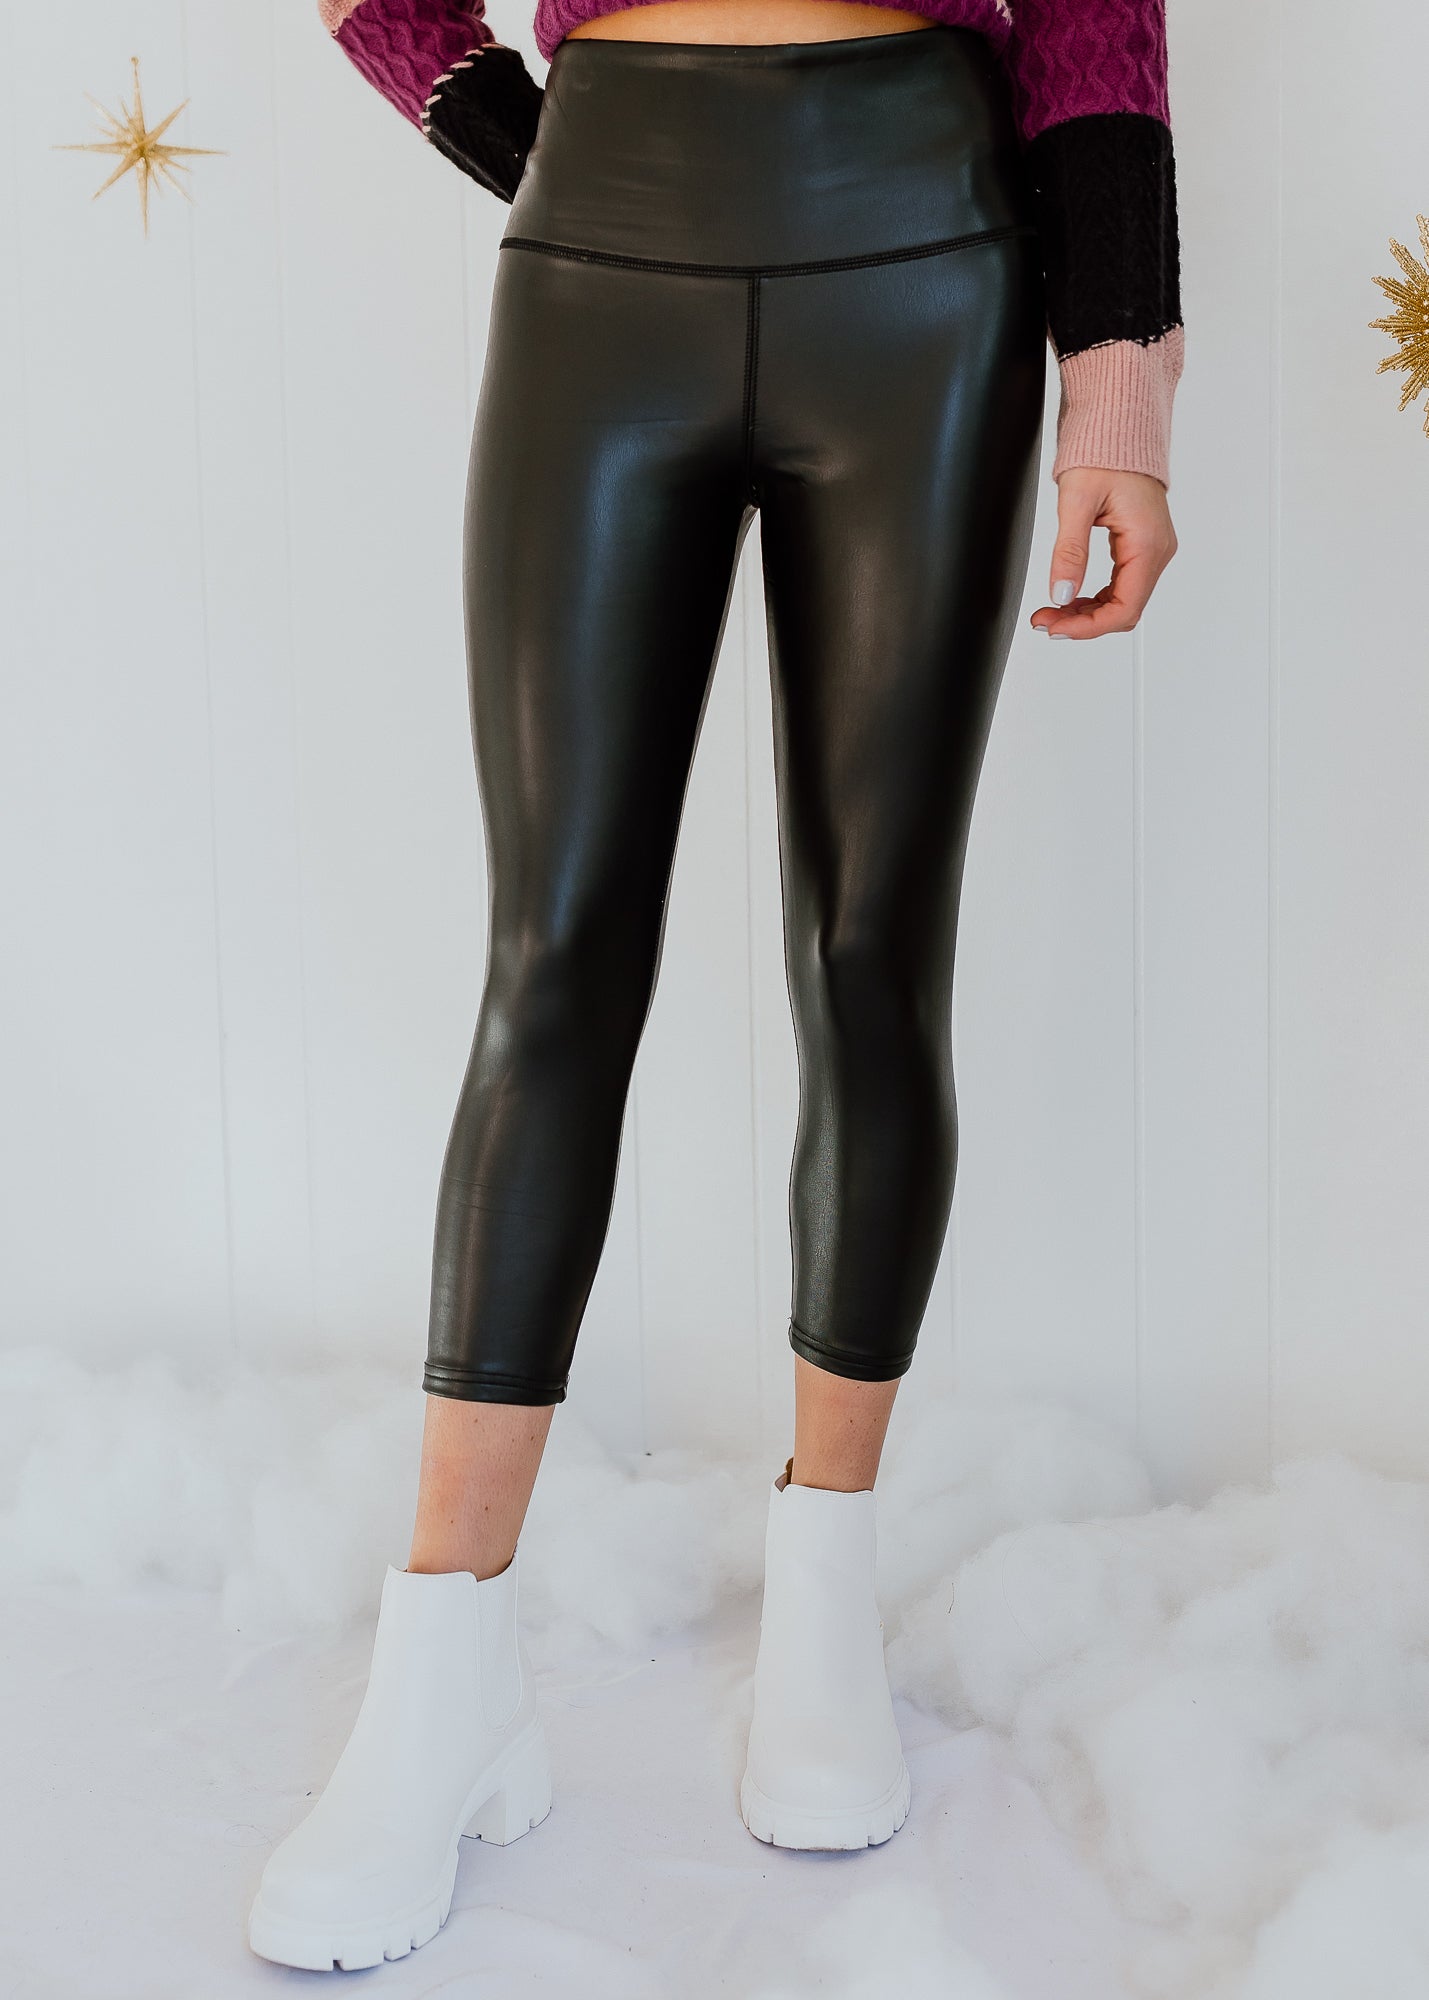 Buy Women's Black Matte Color Inner Raised High Waist Faux Leather Leggings